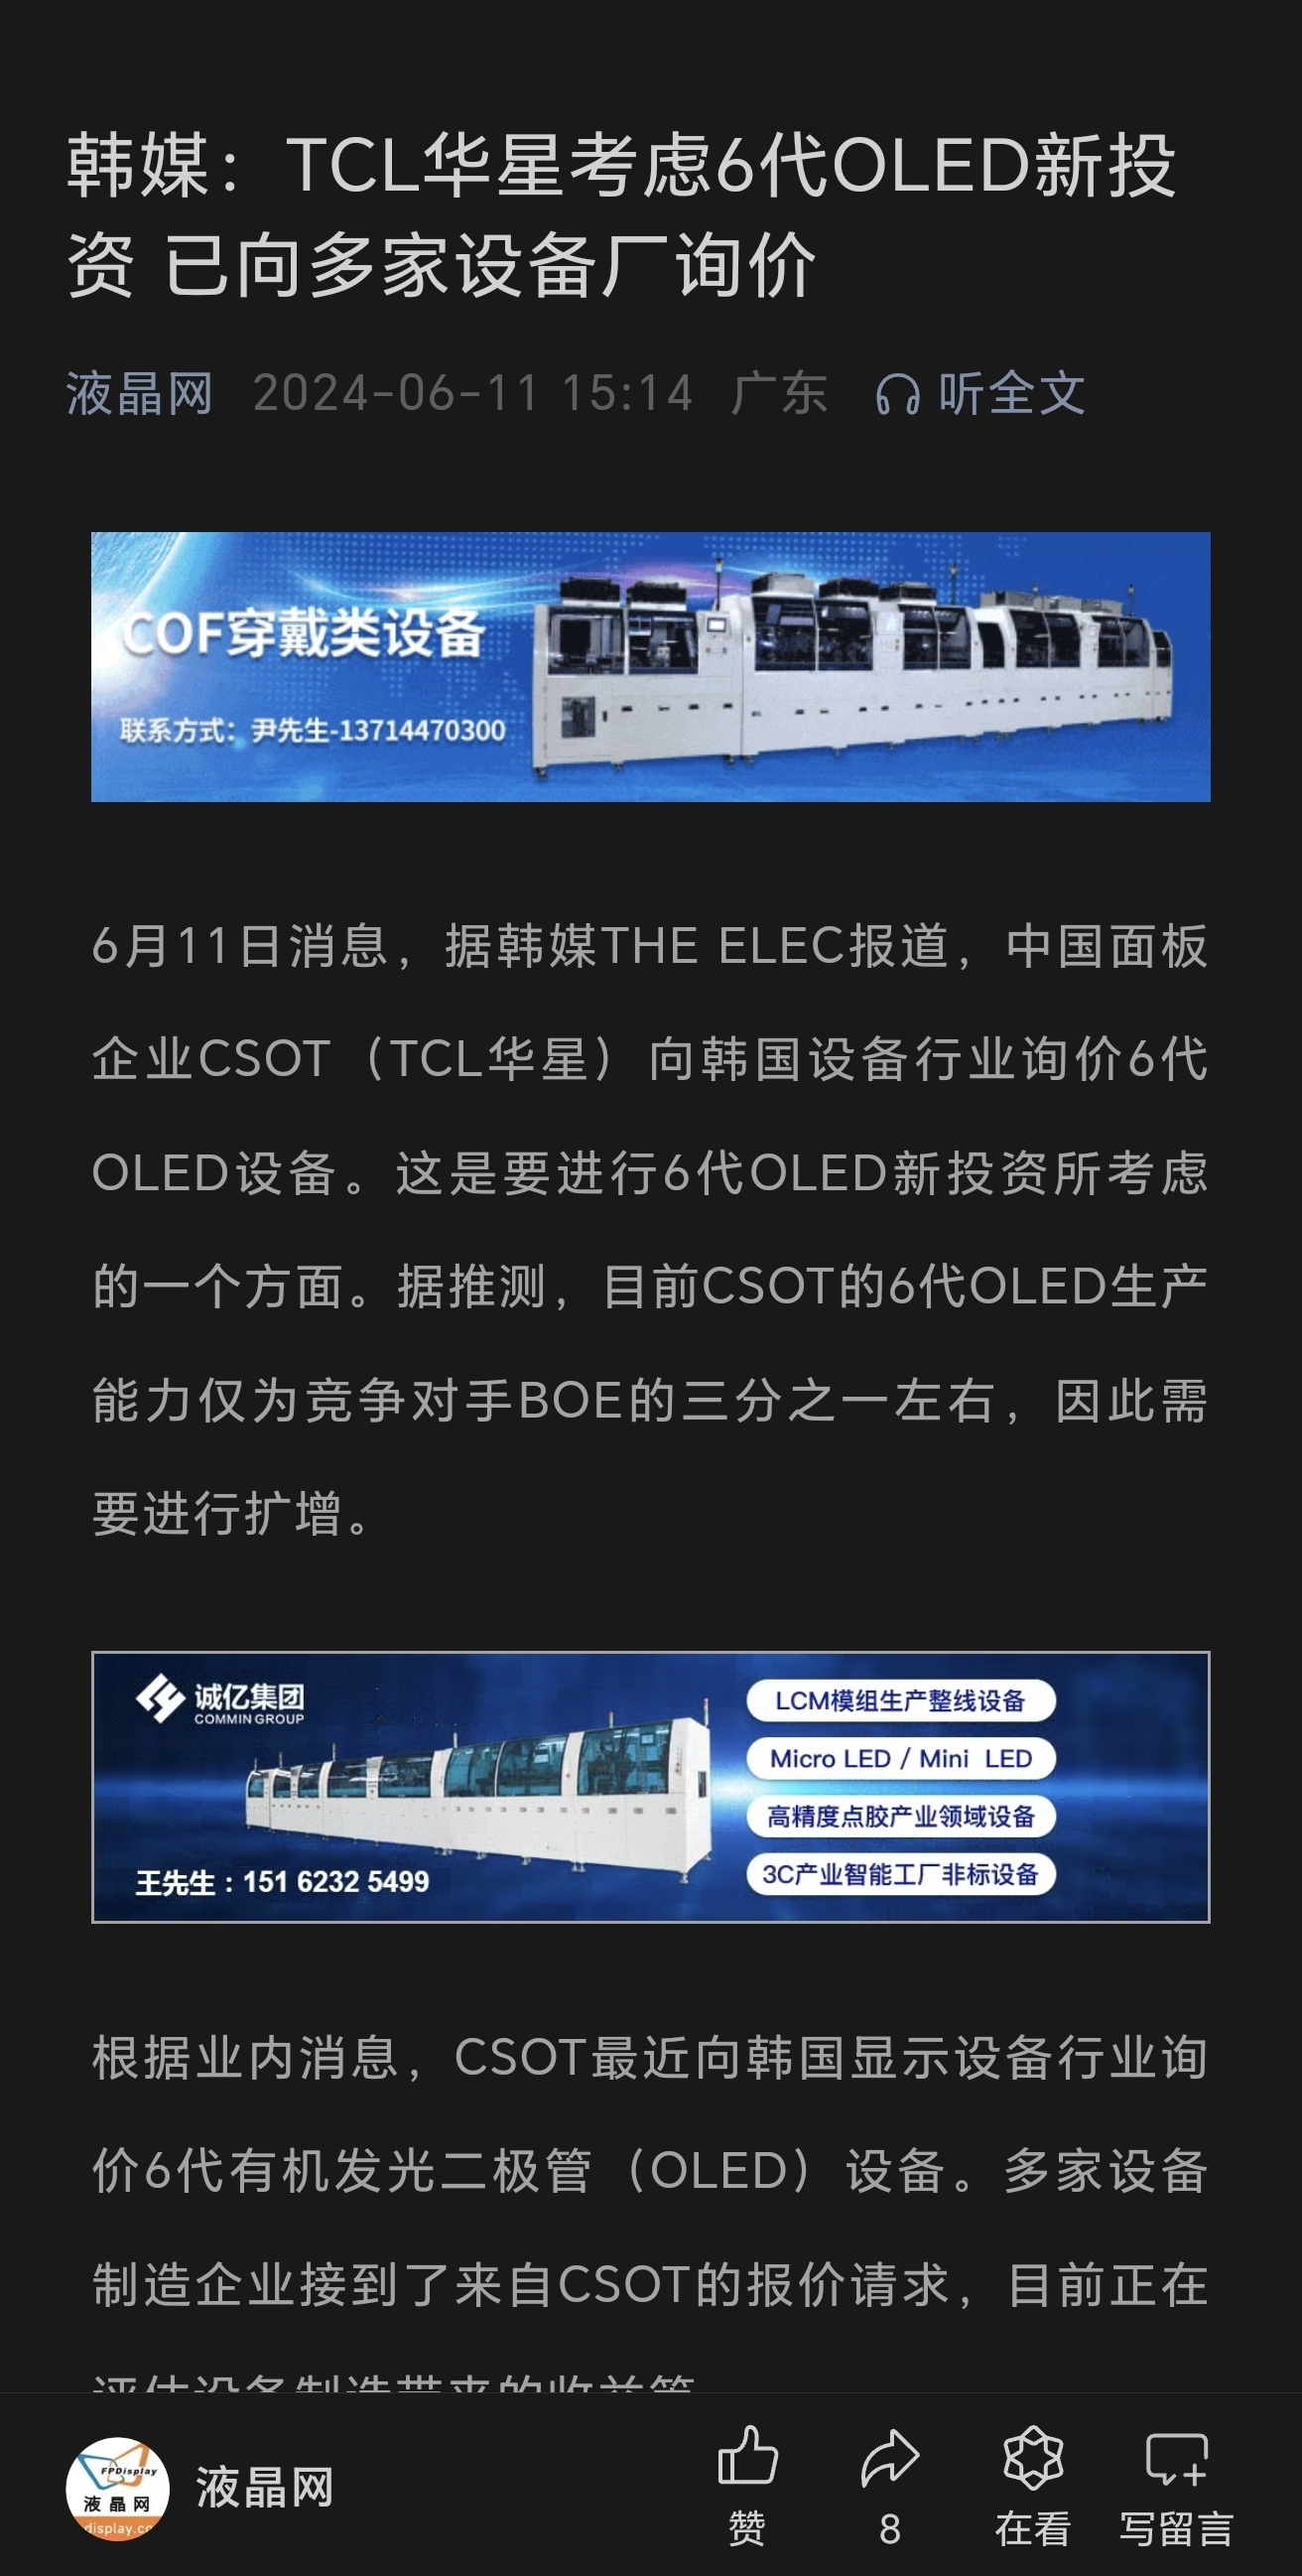 建议tcl科技收购维信诺上市公司股权,来扩大oled产能